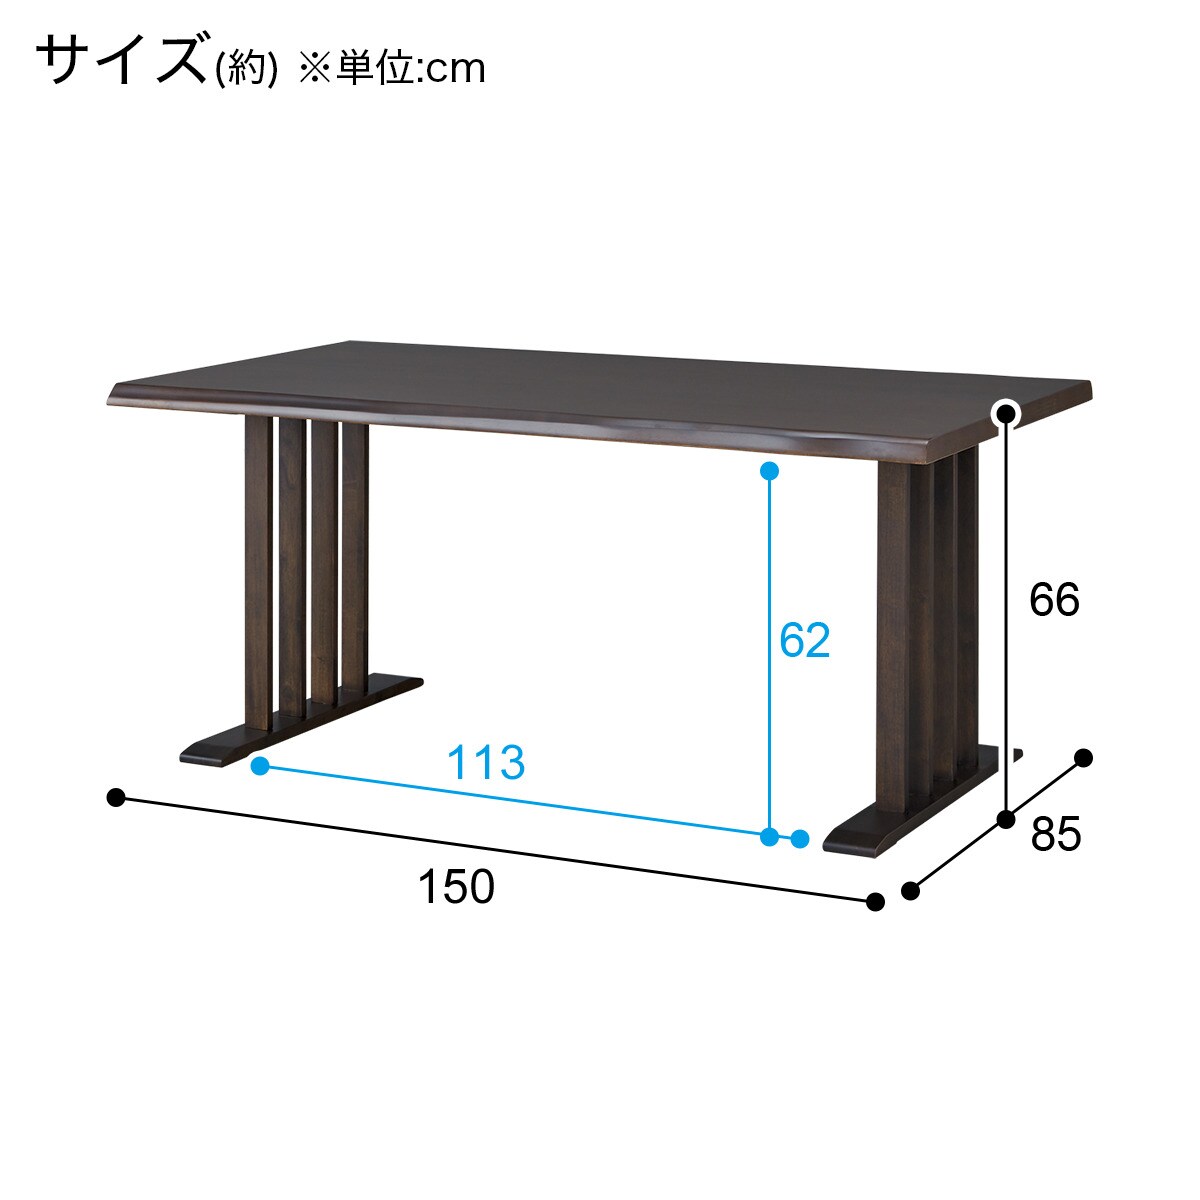 ダイニングテーブル(サザナミ2 150 DBR)通販 | ニトリネット【公式 